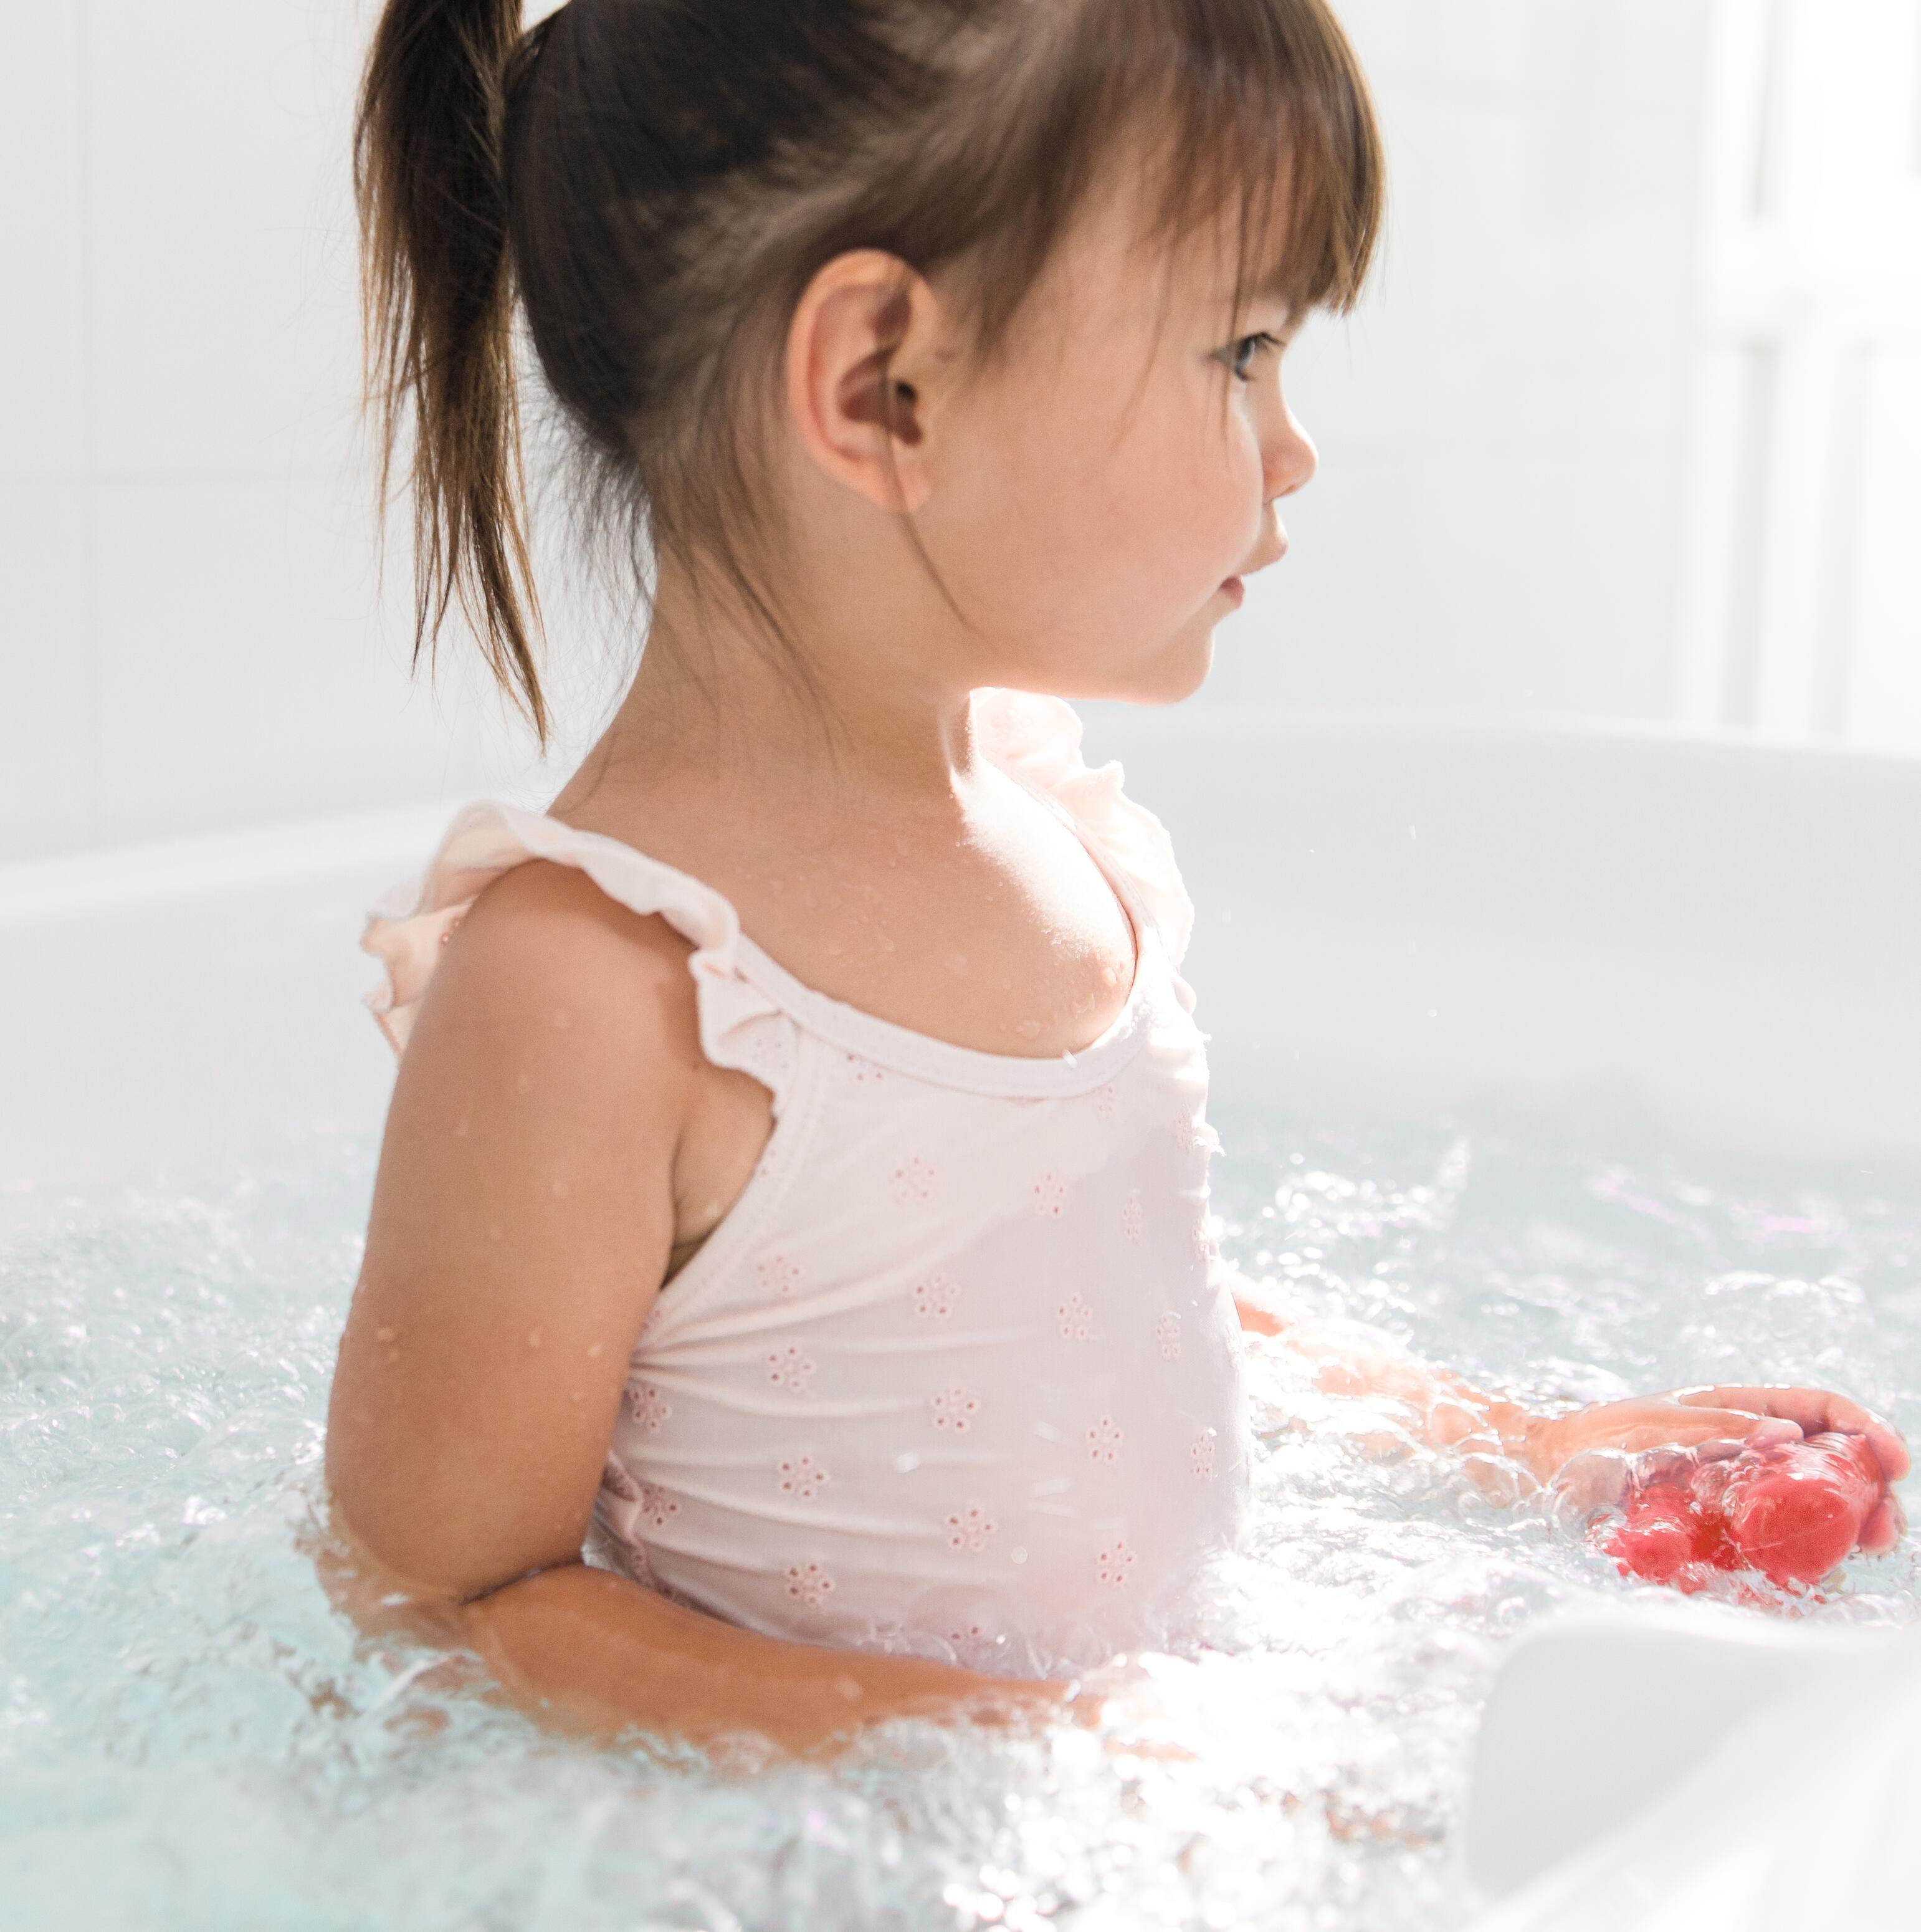 Pelle a tendenza atopica e problemi cutanei: mio figlio può fare il bagno?